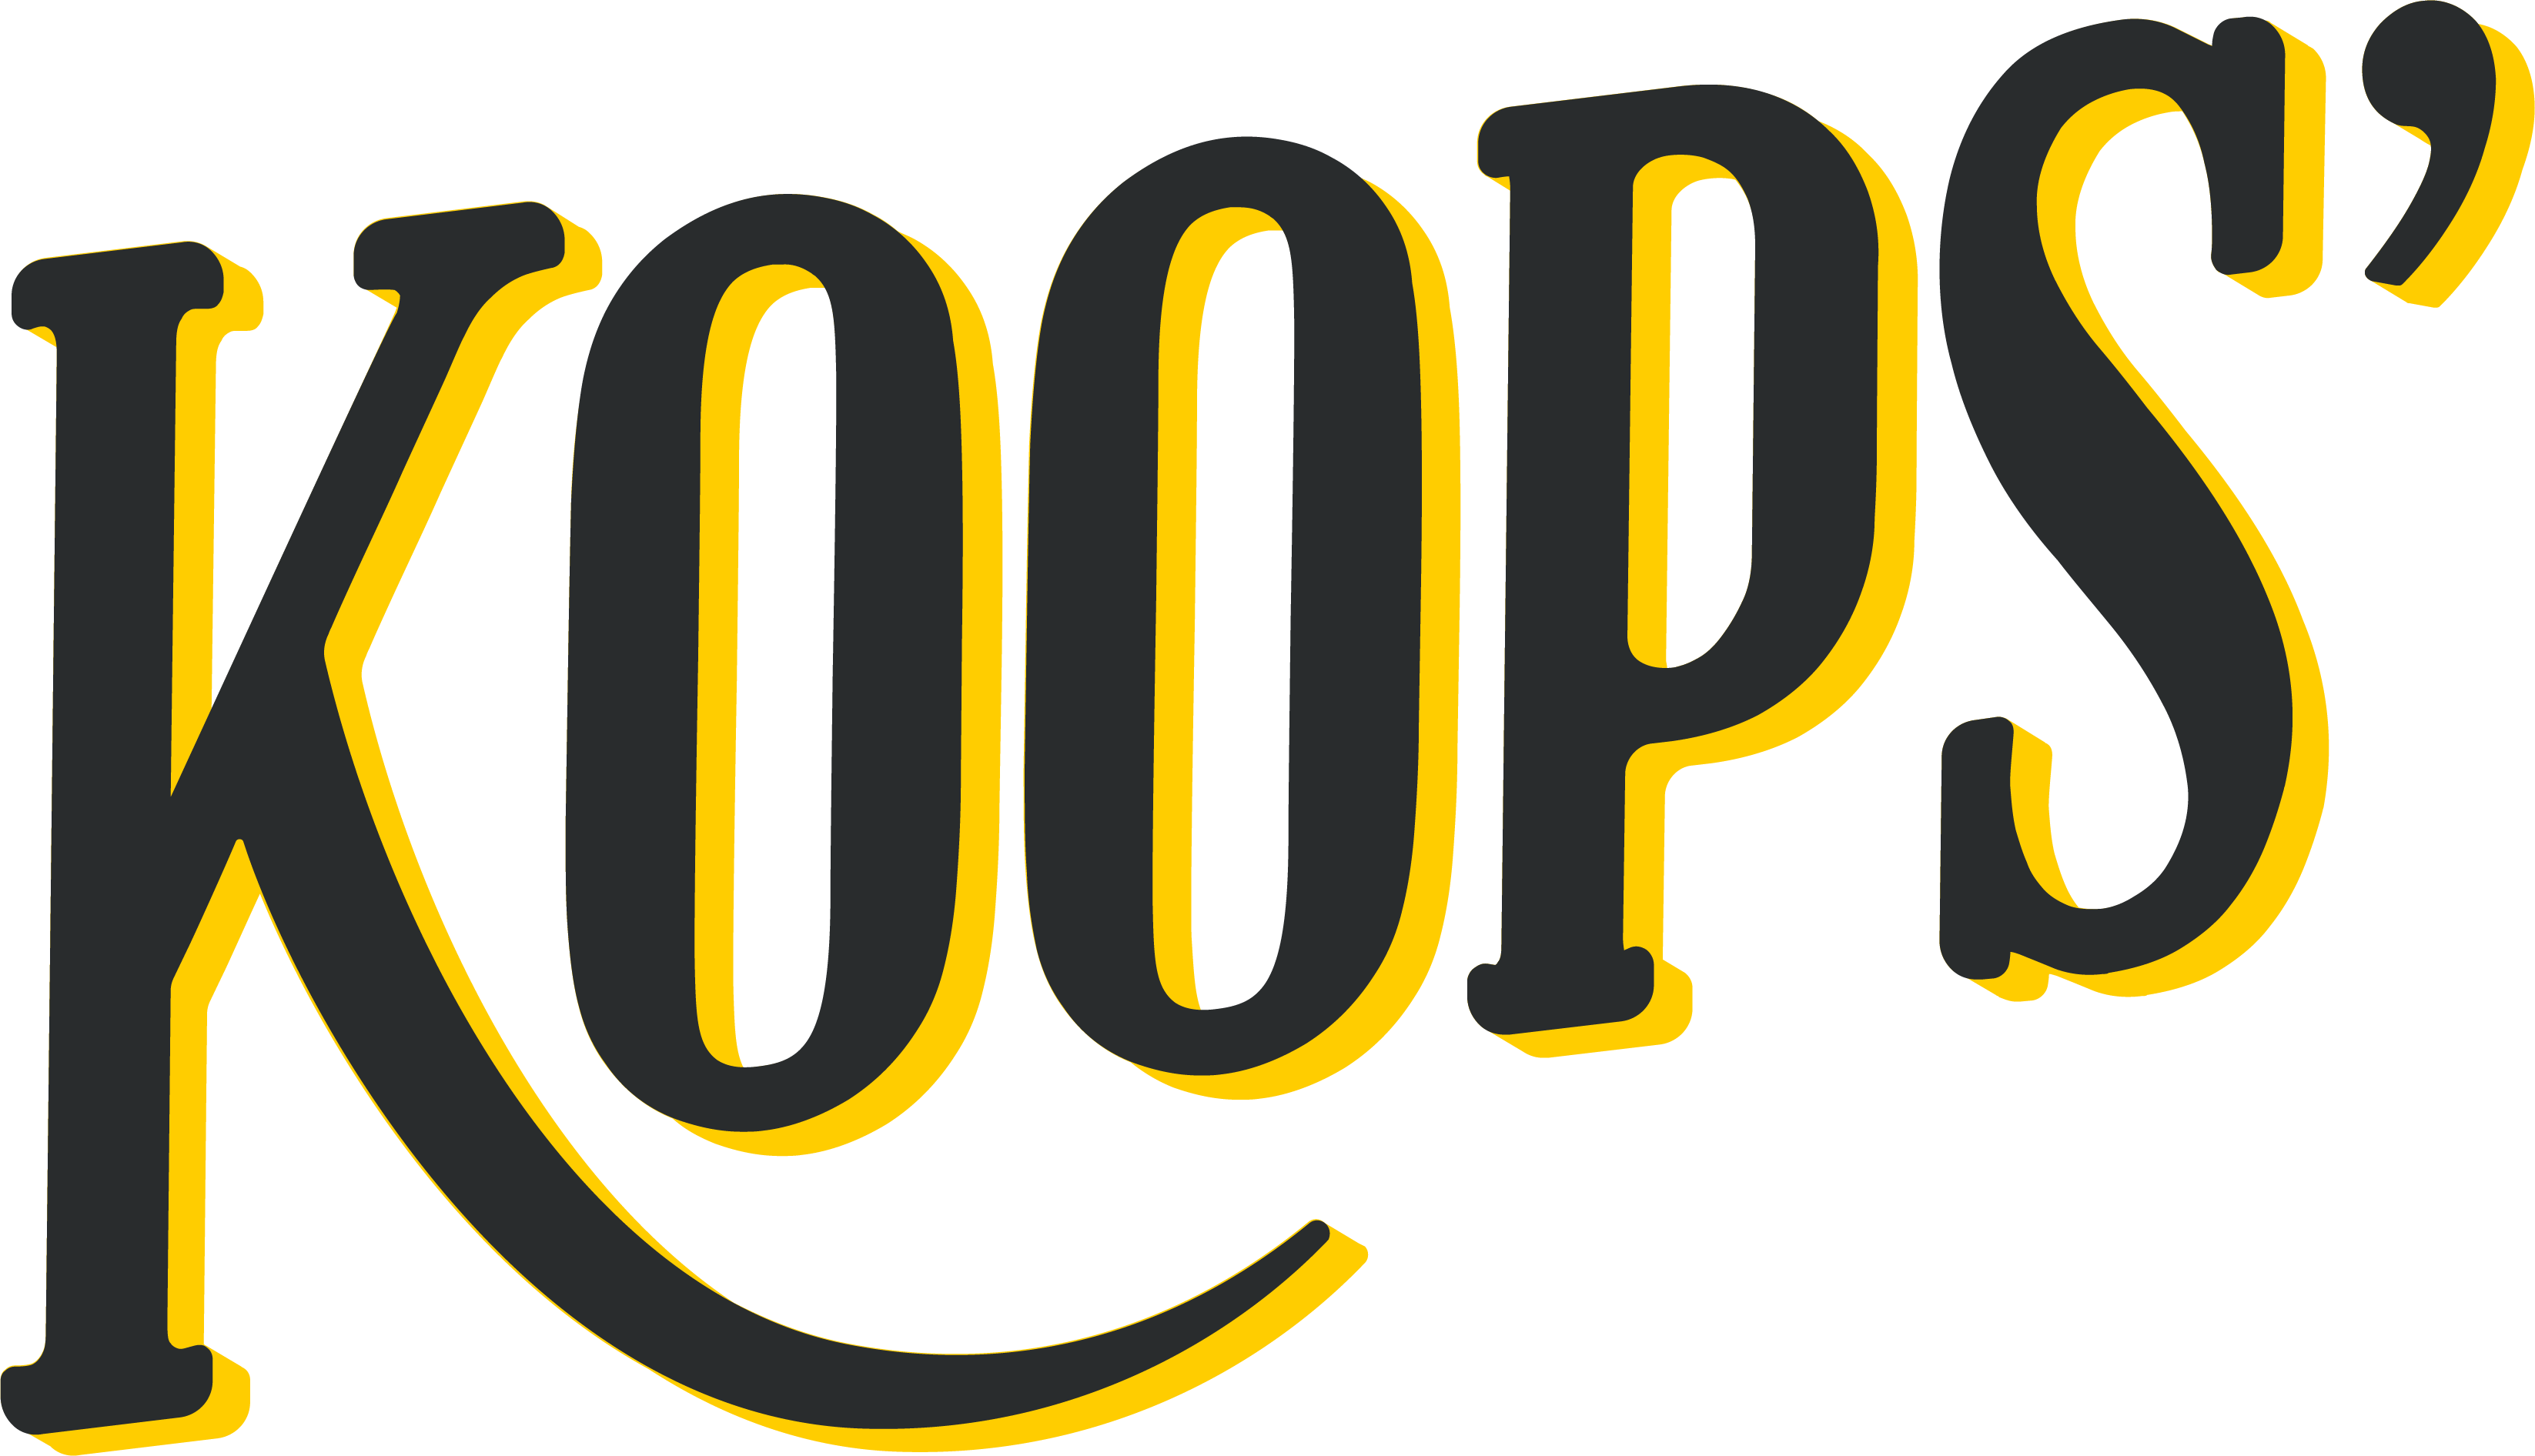 koops mustard logo